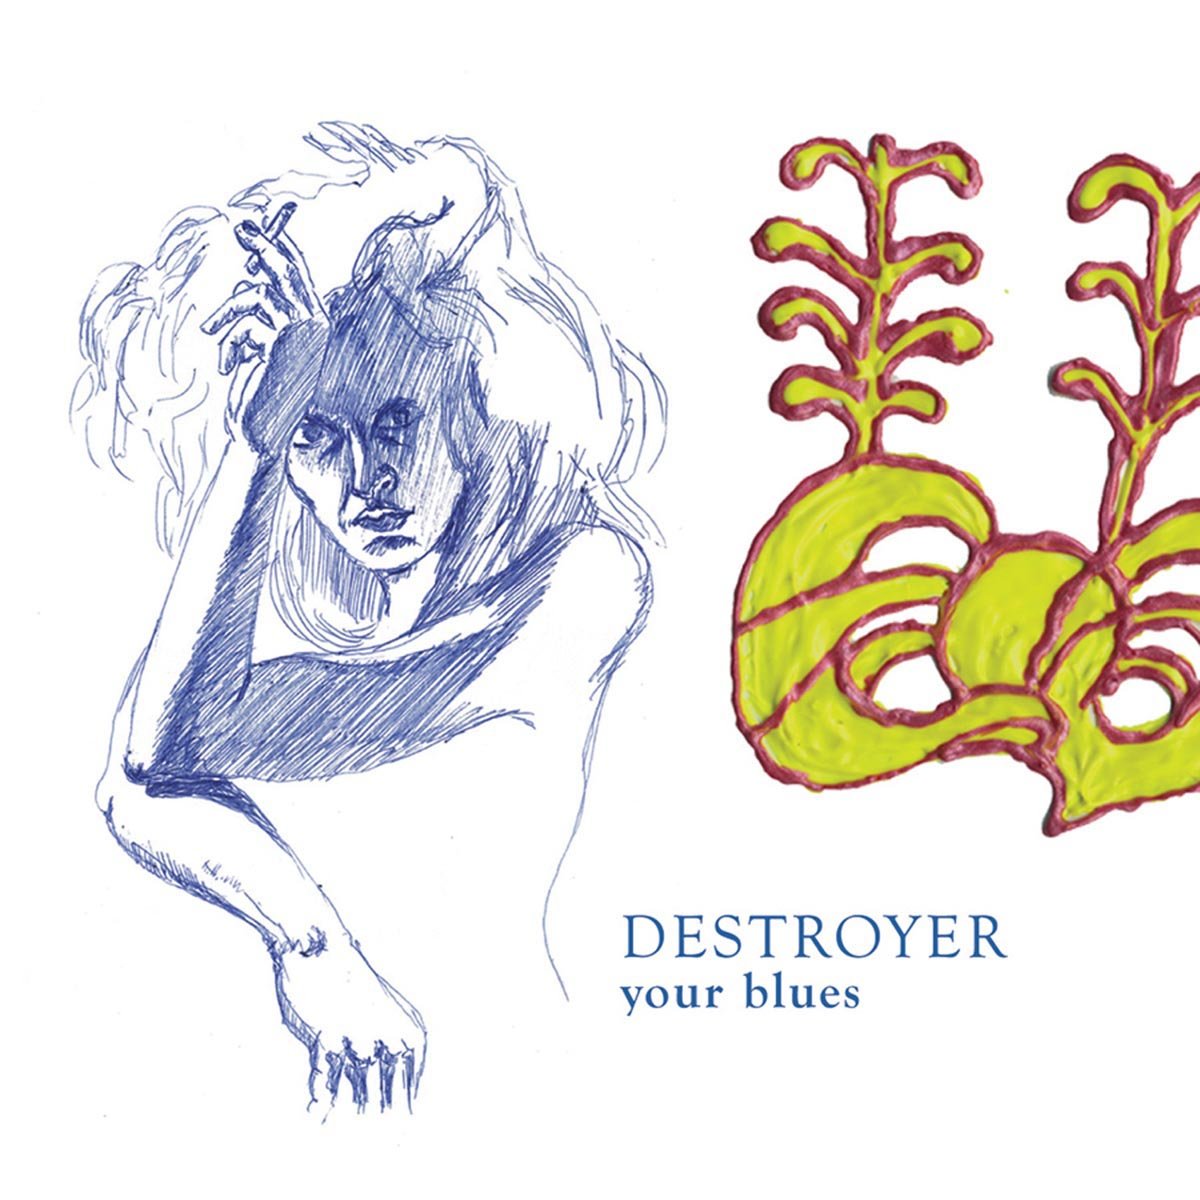 Destroyer "Your blues" LP